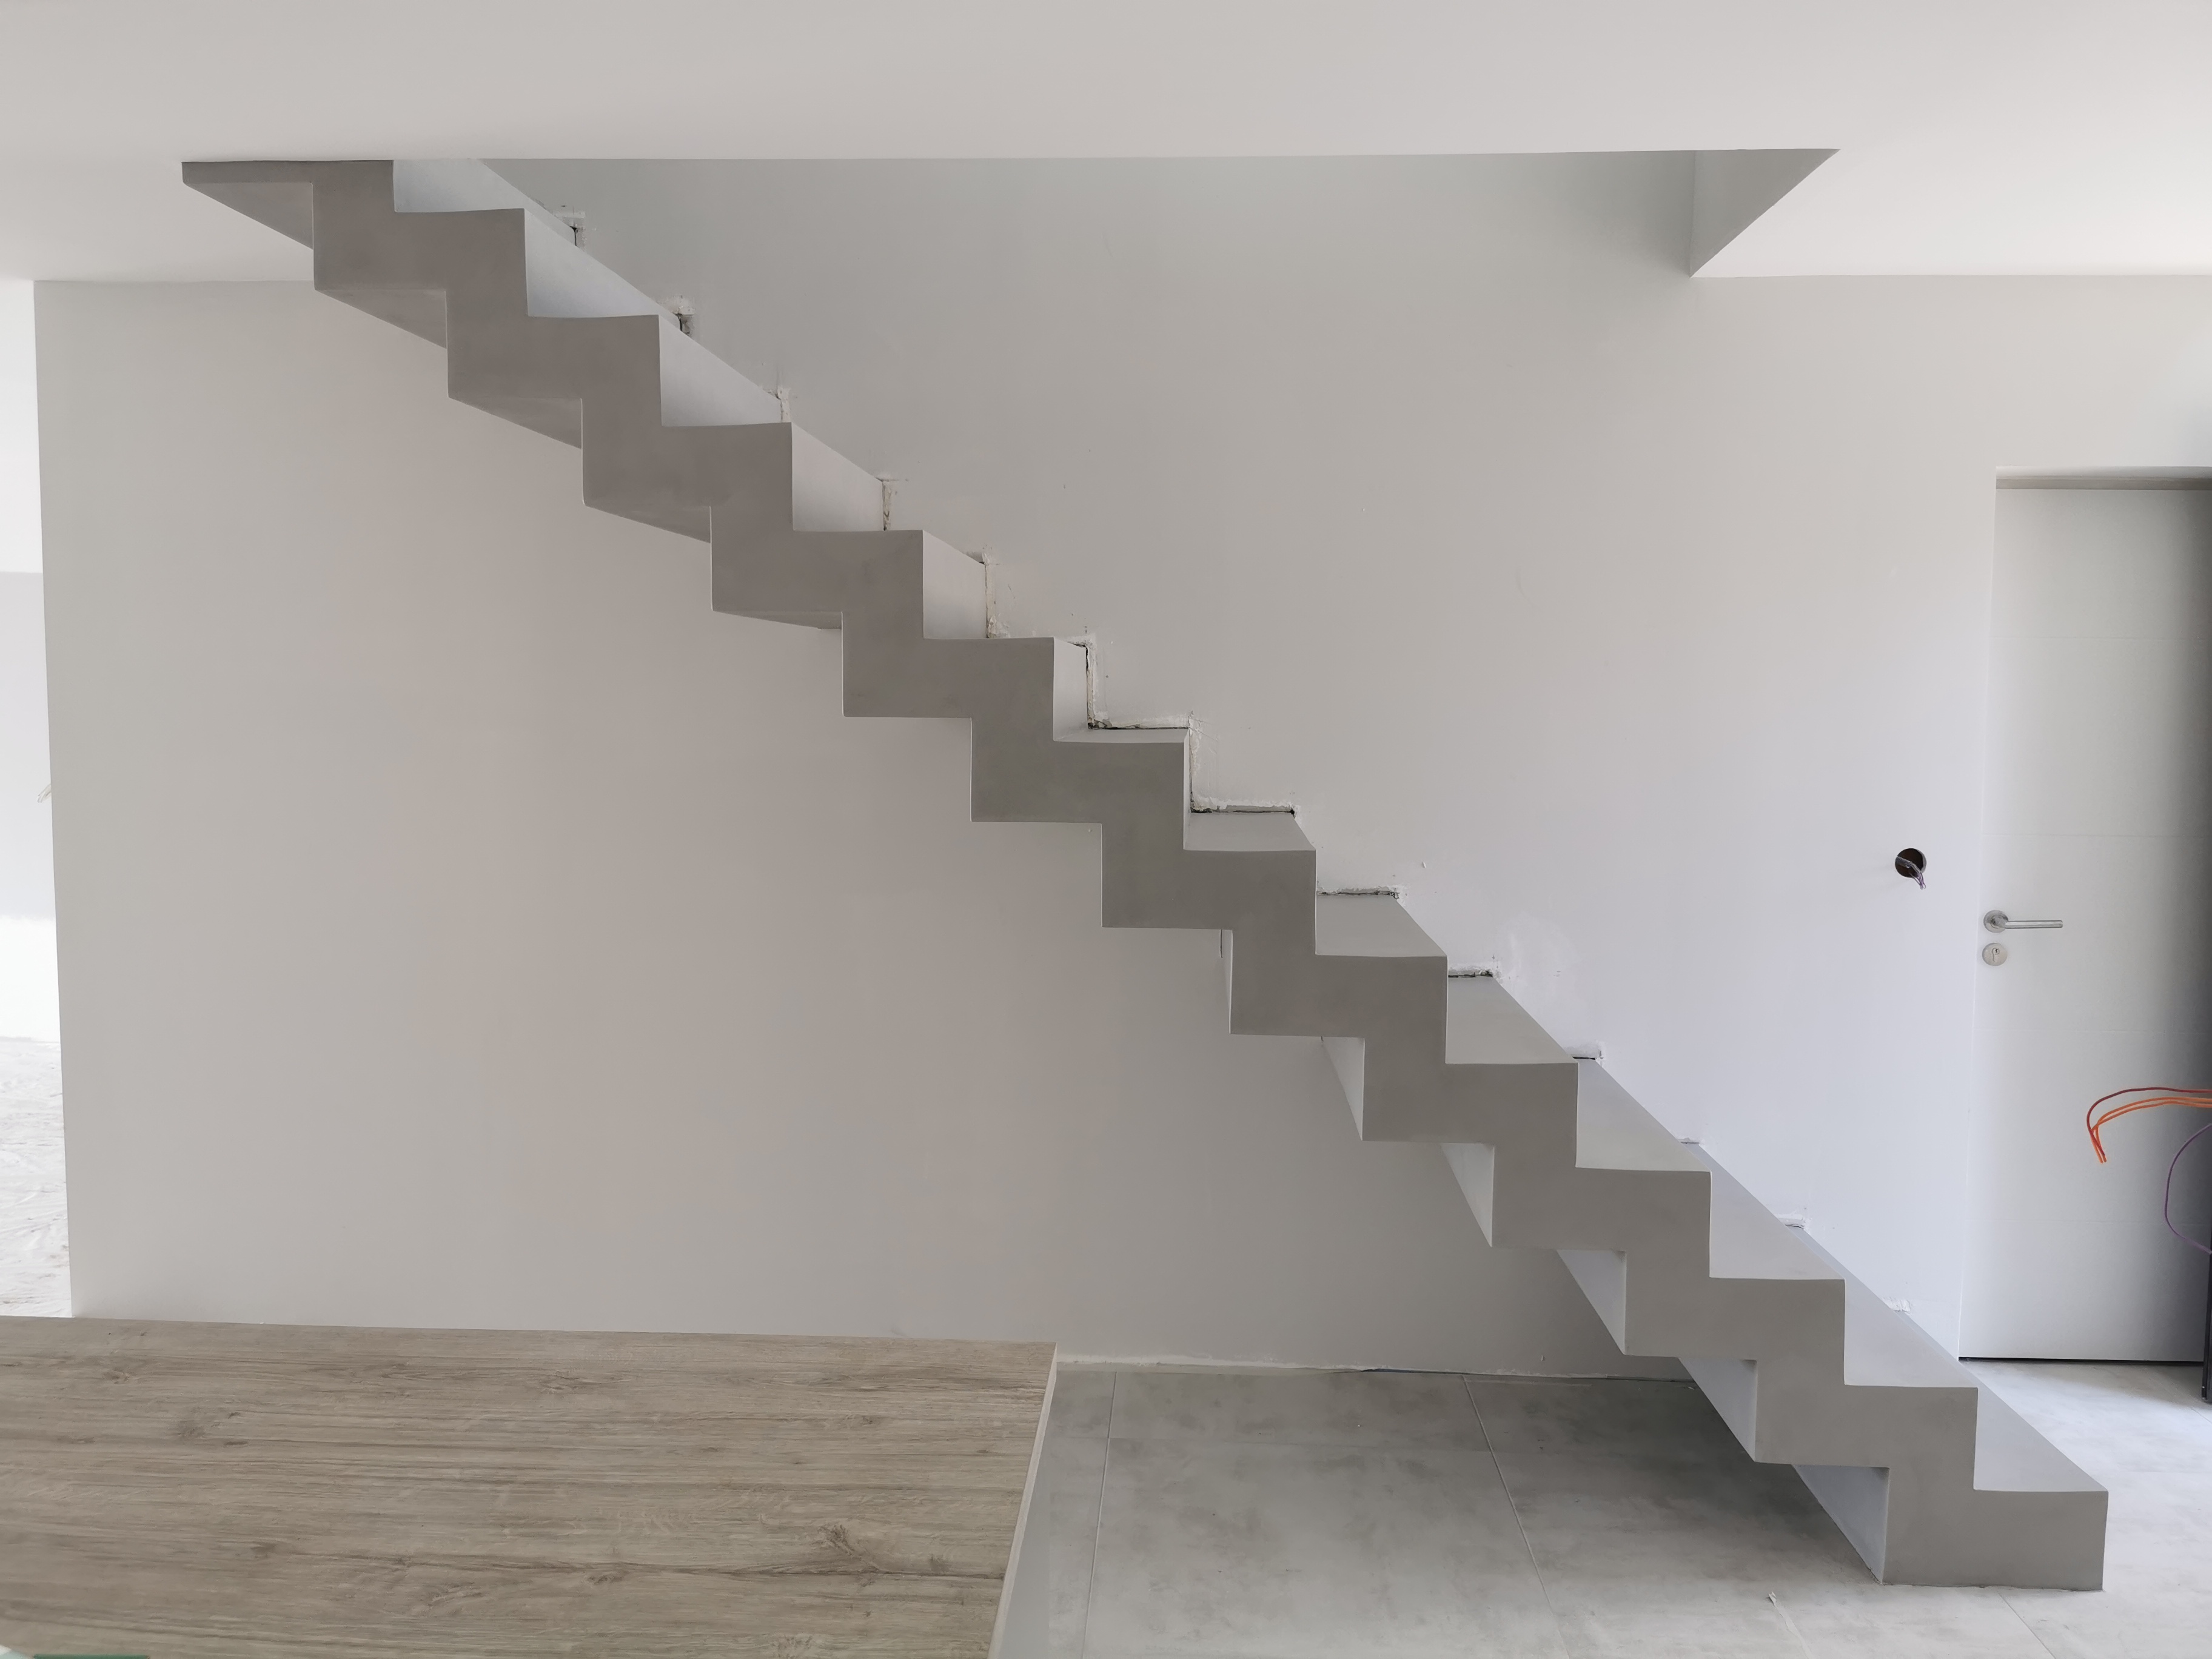 bel escalier crémaillère sur mesure en béton ciré vernis mat couleur gris souris A Cauderant dans Bordeaux en Gironde pour un constructeur